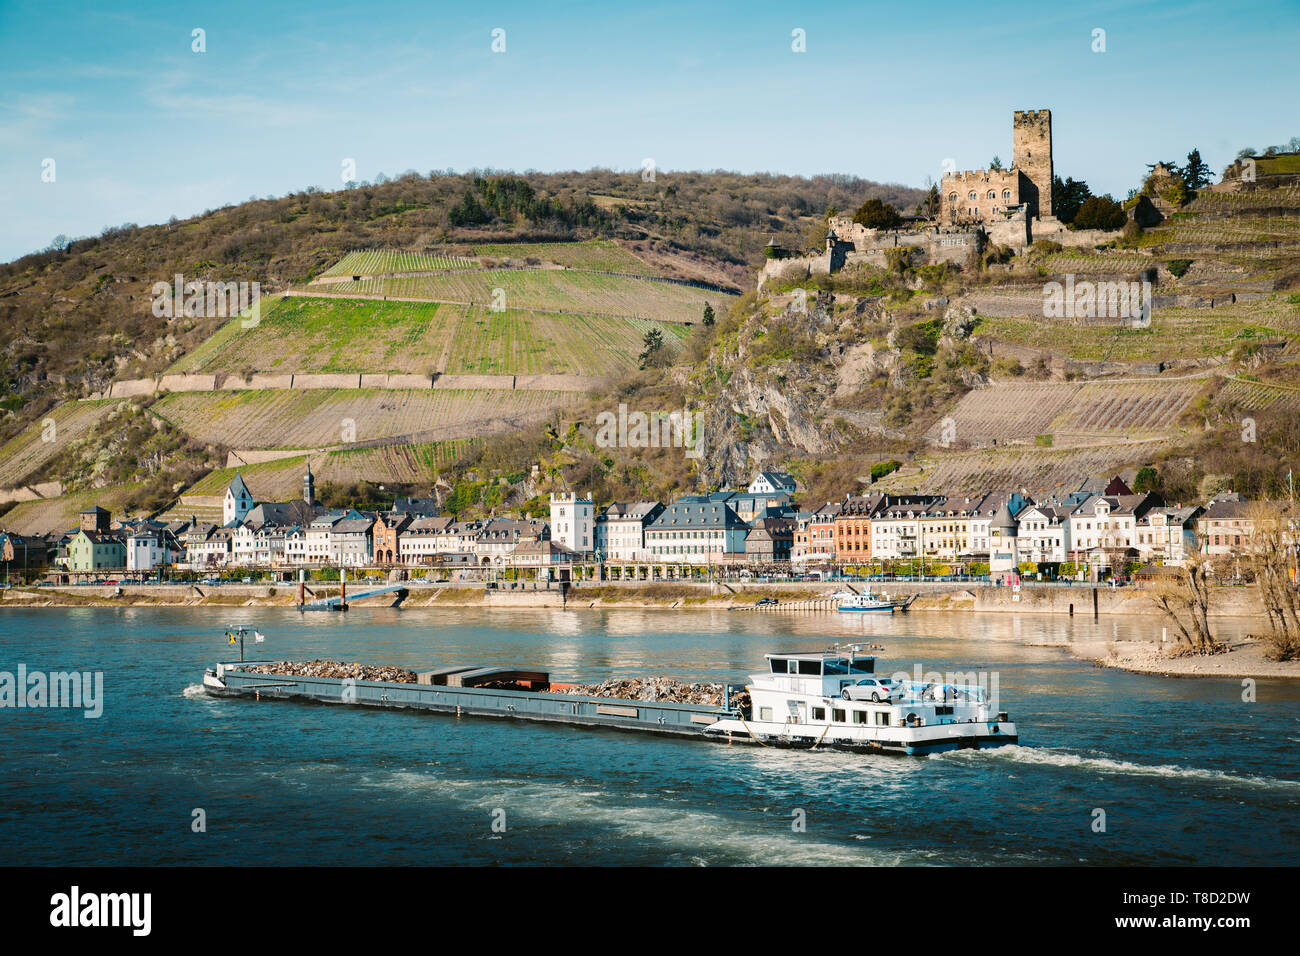 Schöne Sicht auf die historische Stadt Kaub mit der berühmten Burg Pfalzgrafenstein entlang Rhein auf einem malerischen sonnigen Tag mit blauen Himmel im Frühjahr, Rheinla Stockfoto